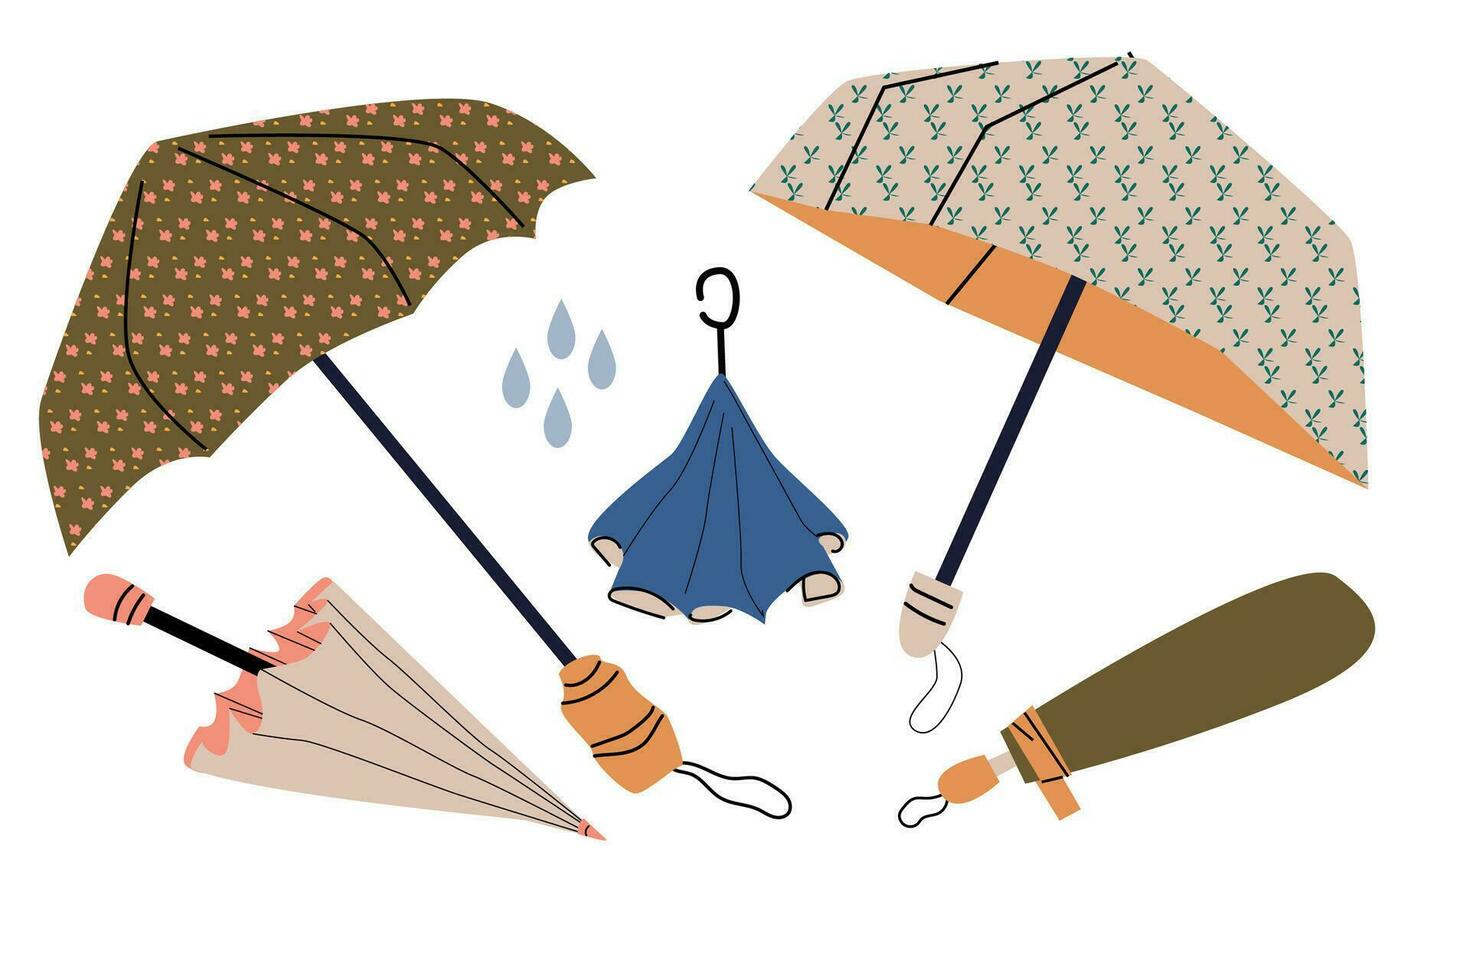 einstellen von klassisch Regenschirme im varios Positionen vektor